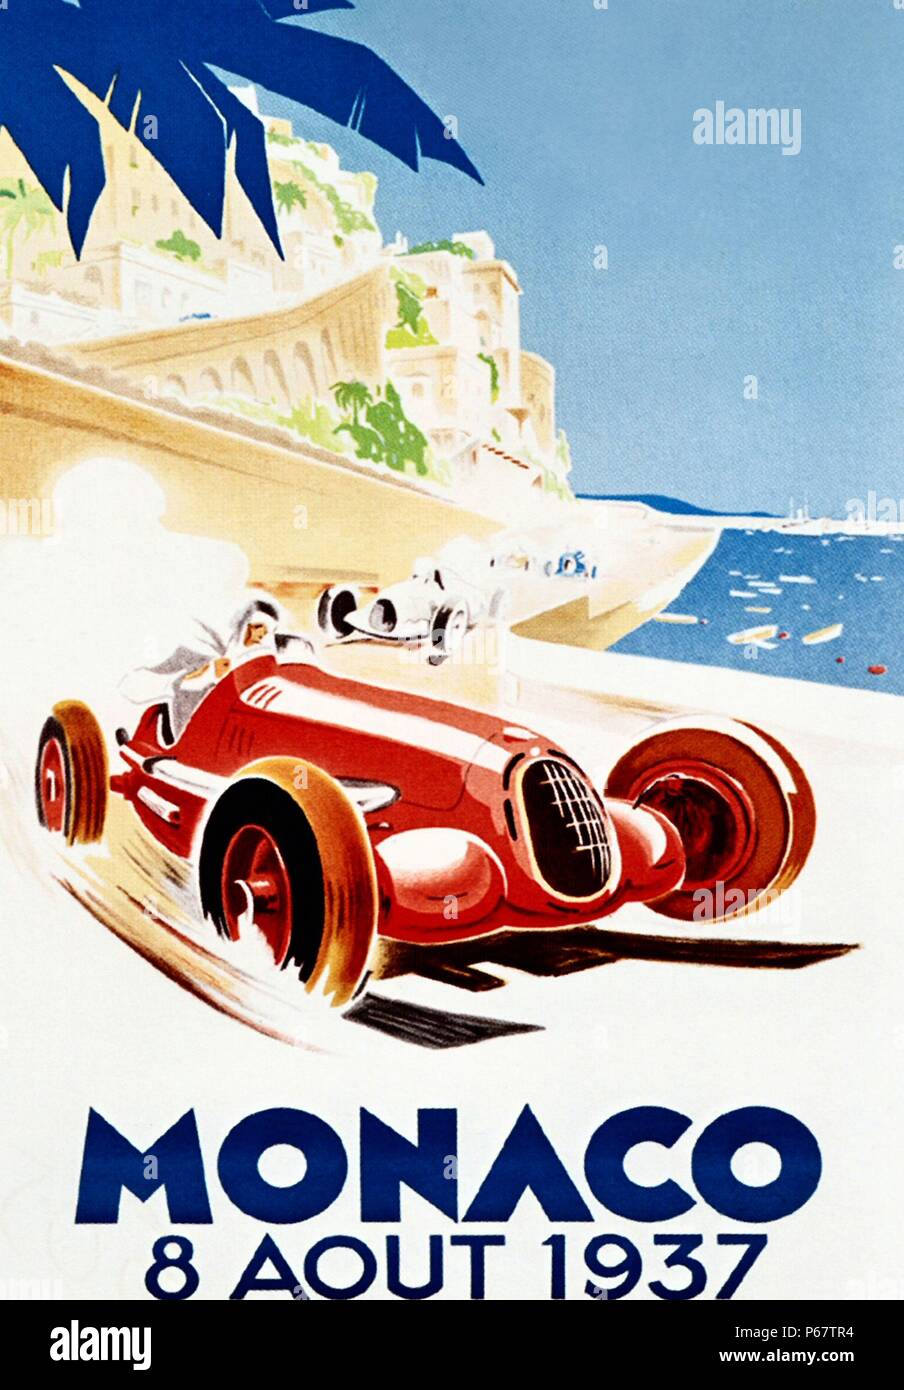 1937 il Grand Prix di Monaco era un Grand Prix Motor gara tenutasi sul circuito de Monaco. Essa è stata vinta da Rudolf Caracciola il cui record di sei Gran Premio di Germania vince rimane imbattuto finora. Foto Stock